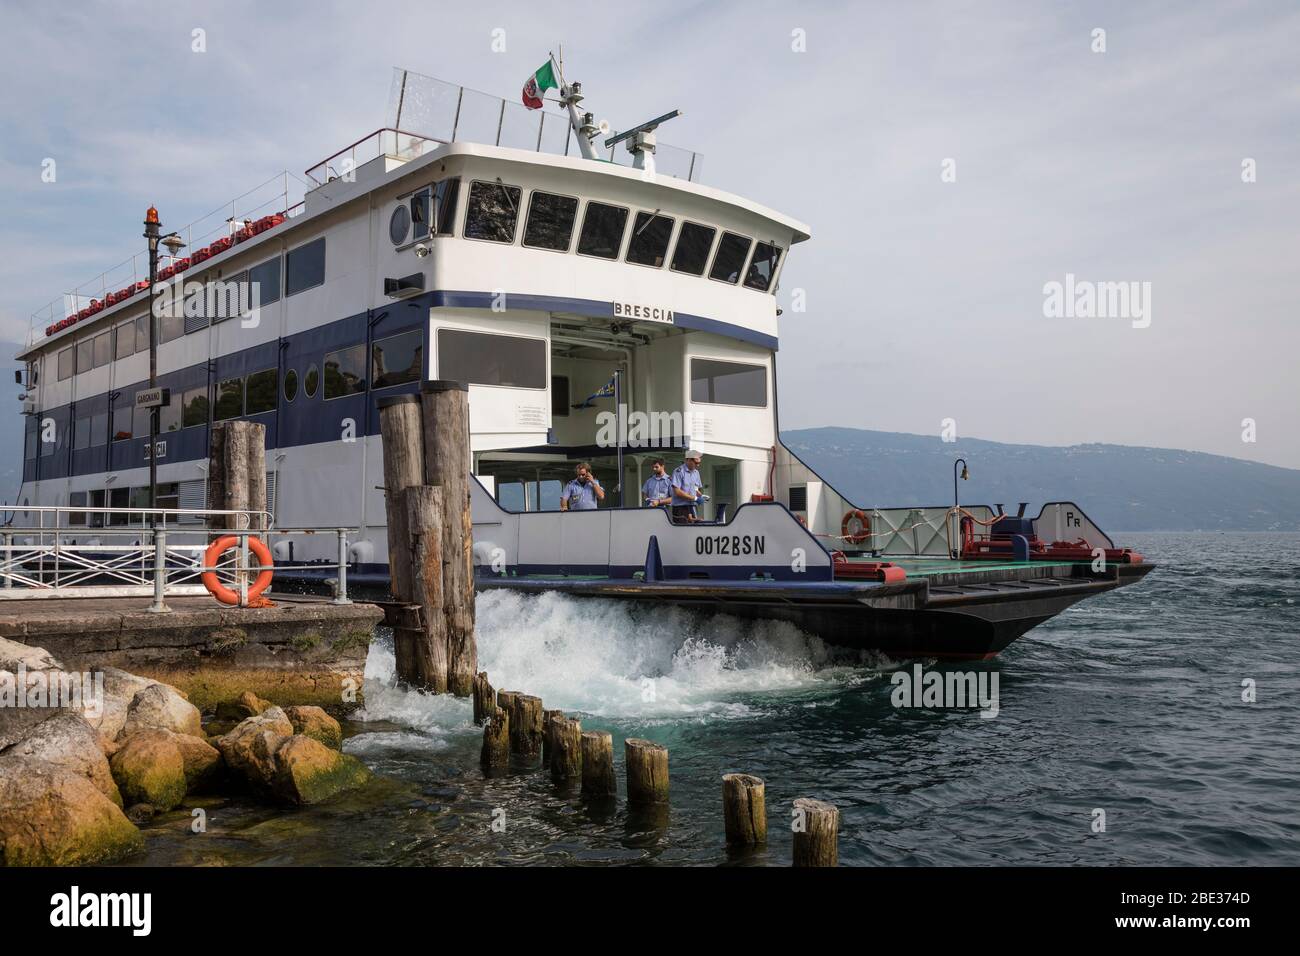 Un ferry sale del pequeño embarcadero de Gargnano a orillas del lago Garda, Italia. Foto de stock